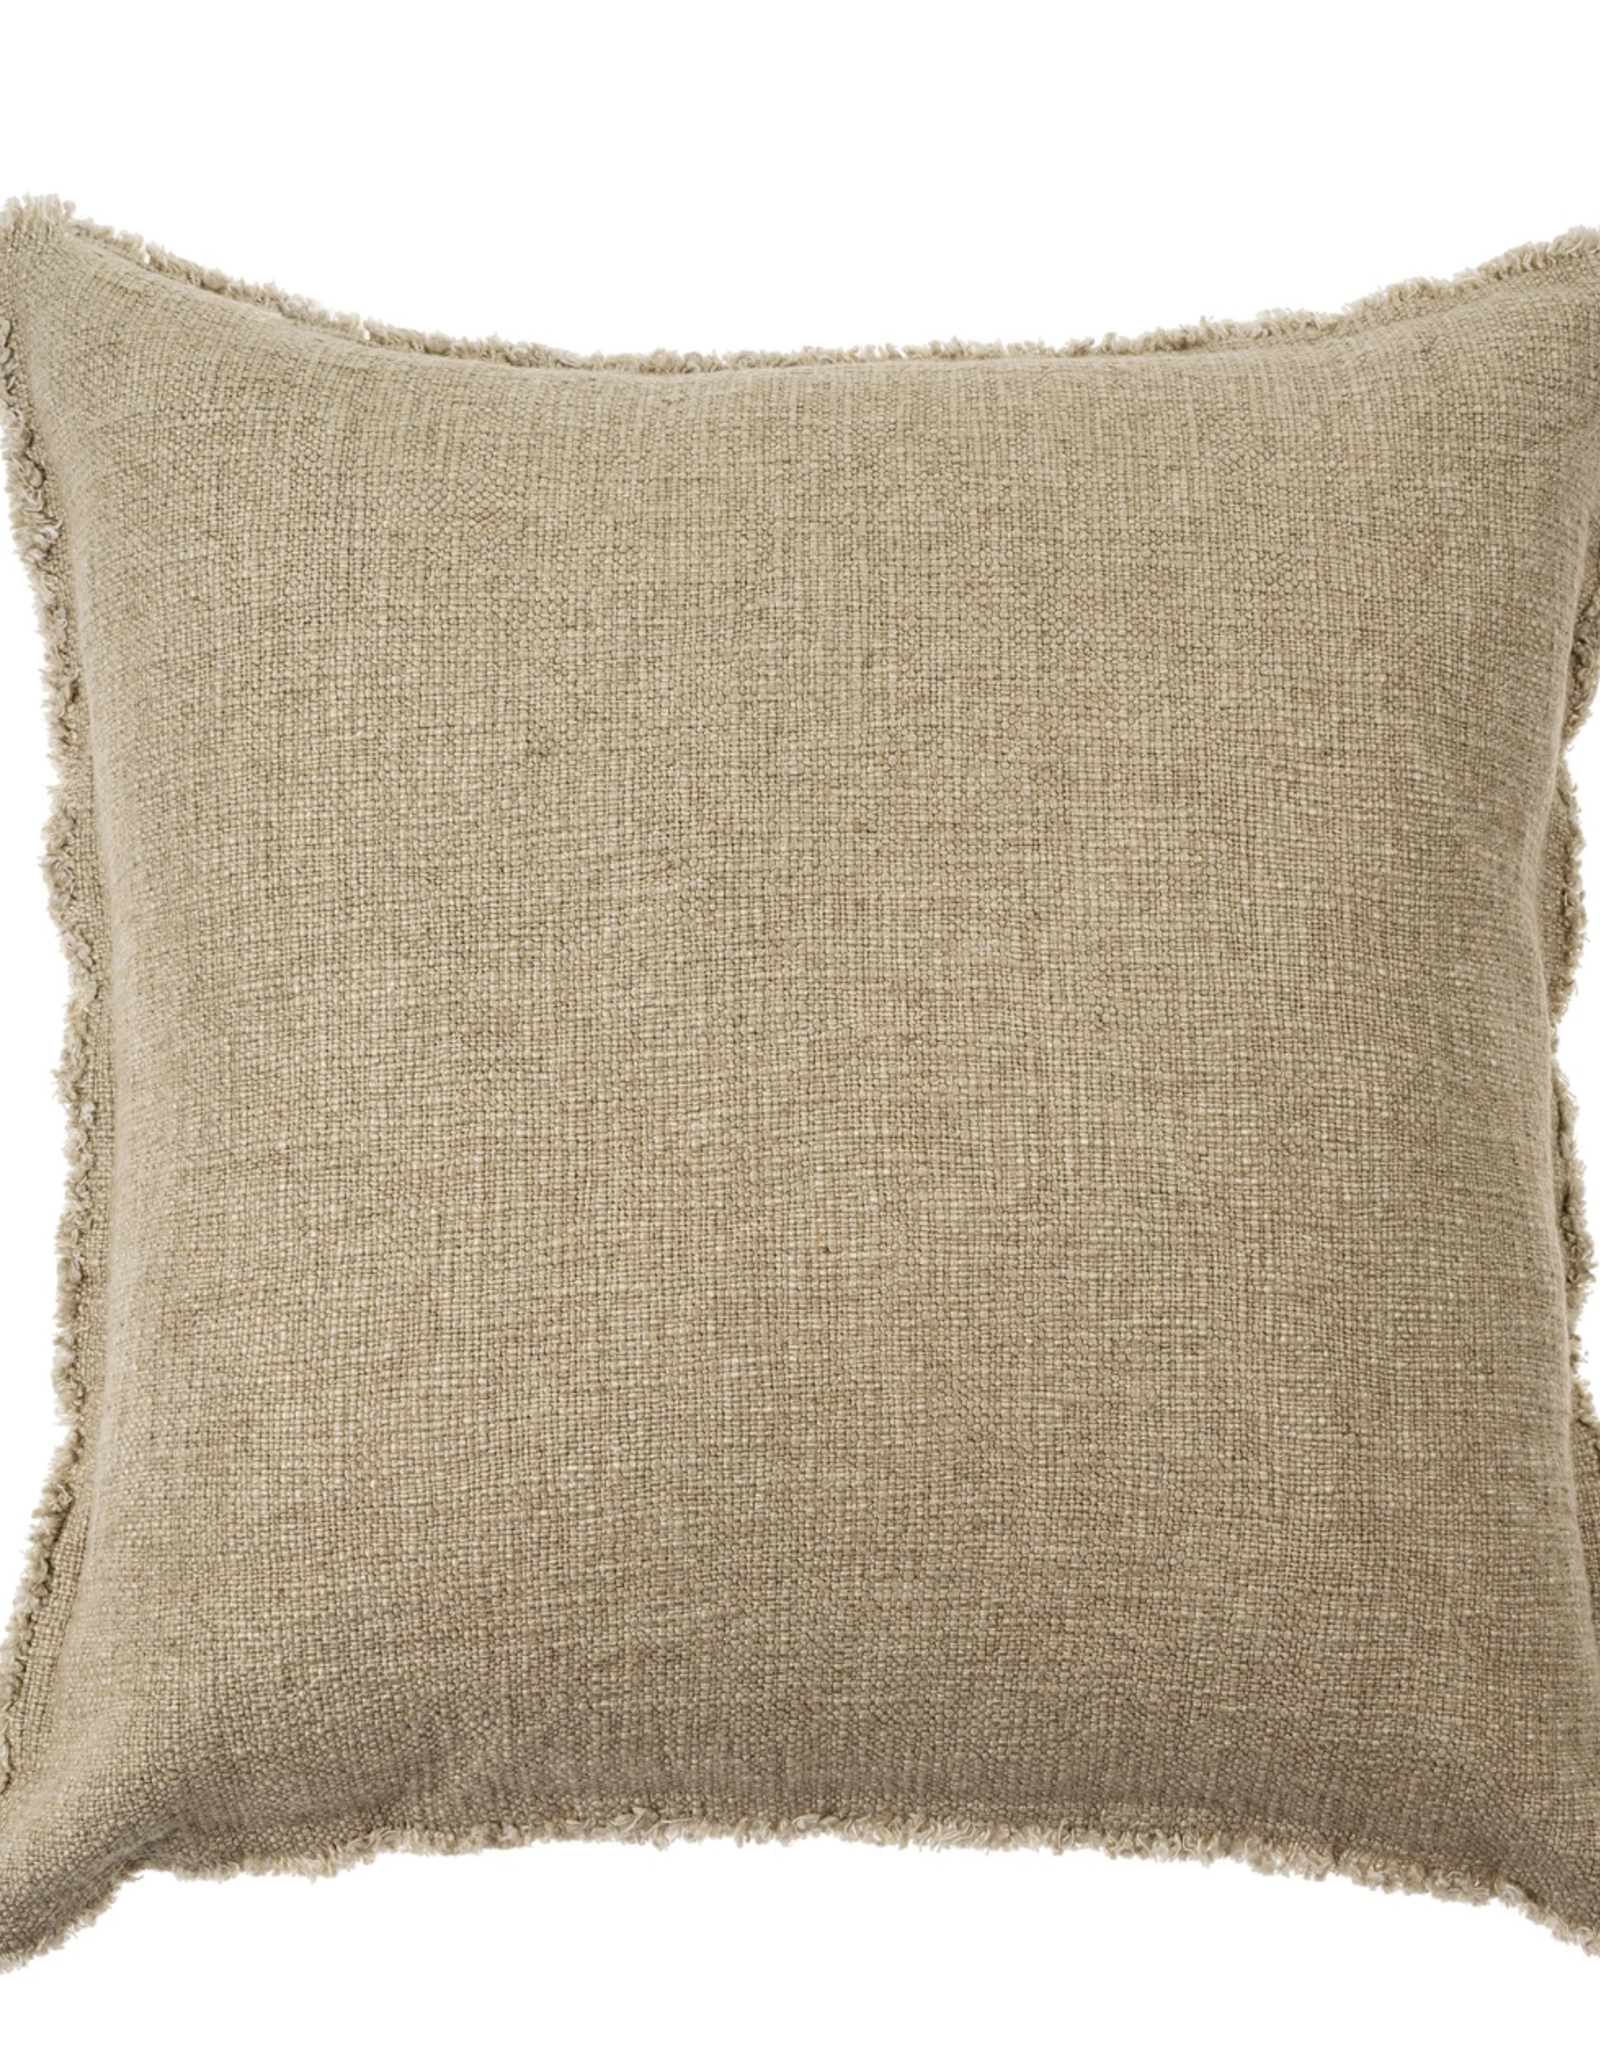 Selena Linen Pillow, Beige 20 x 20